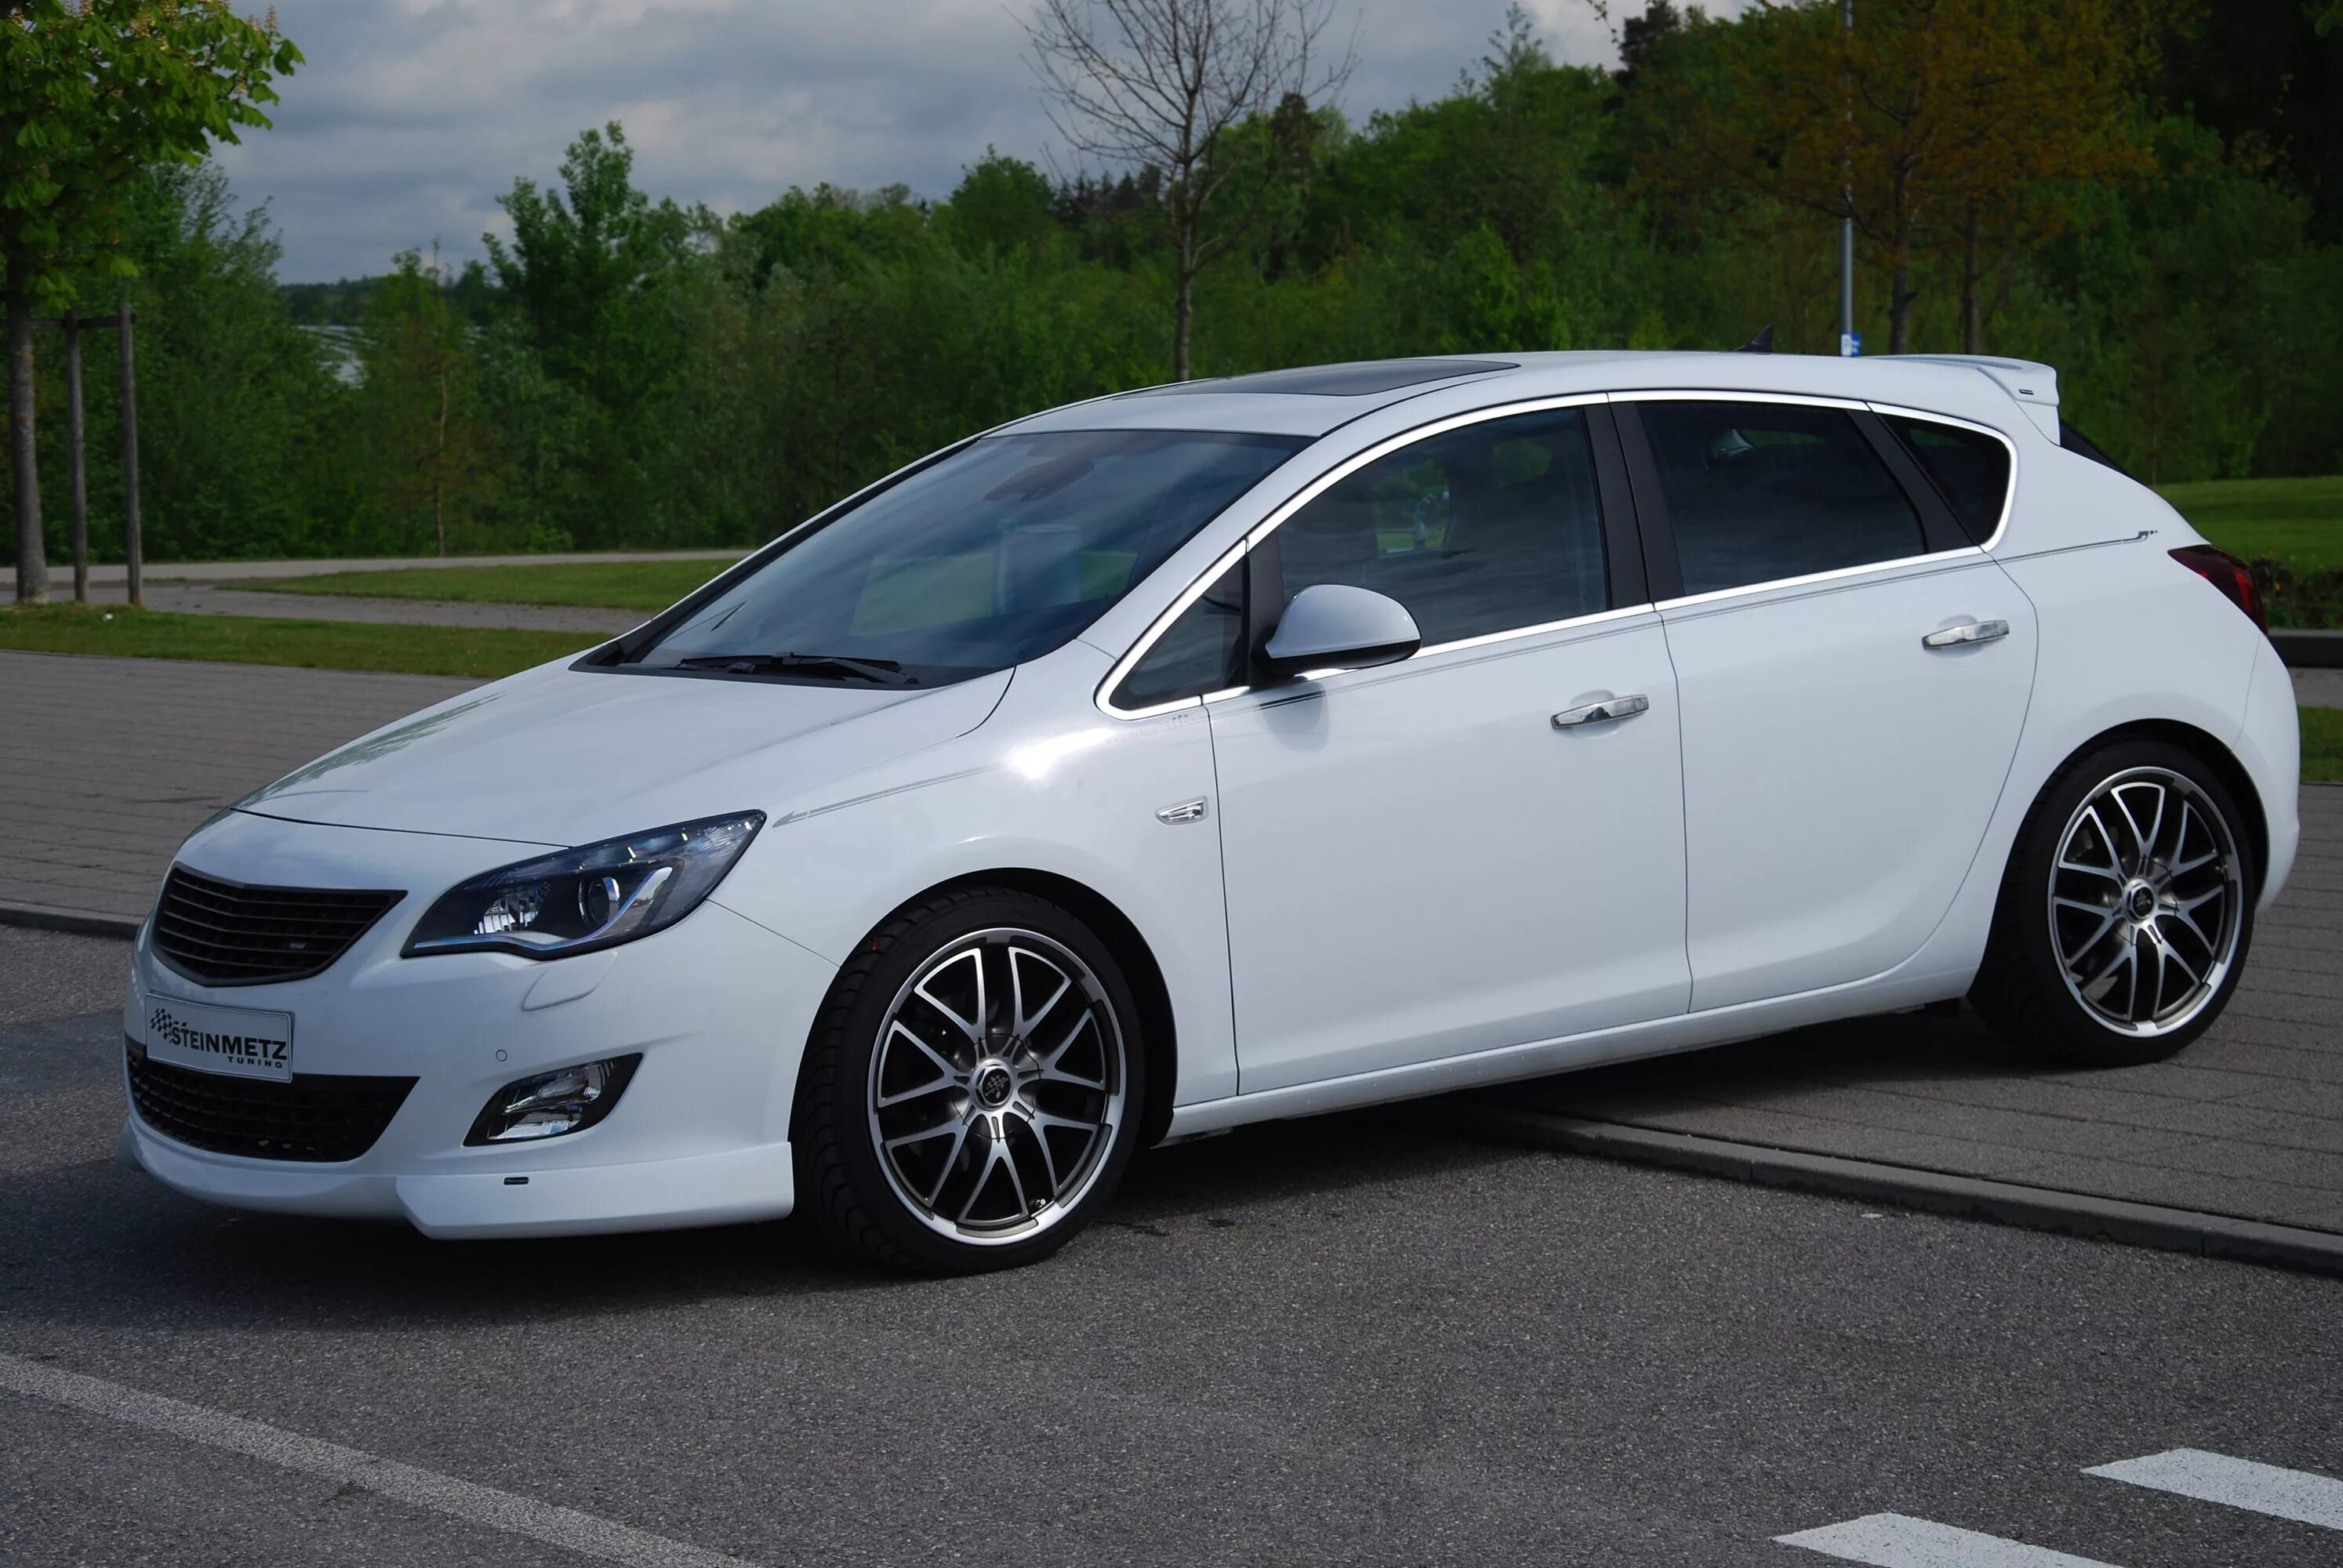 Opel Astra j Tuning. Opel Astra j 2010 Tuning. Opel Astra j Tuning хэтчбек. Opel Astra 2012 Tuning. Opel tuning